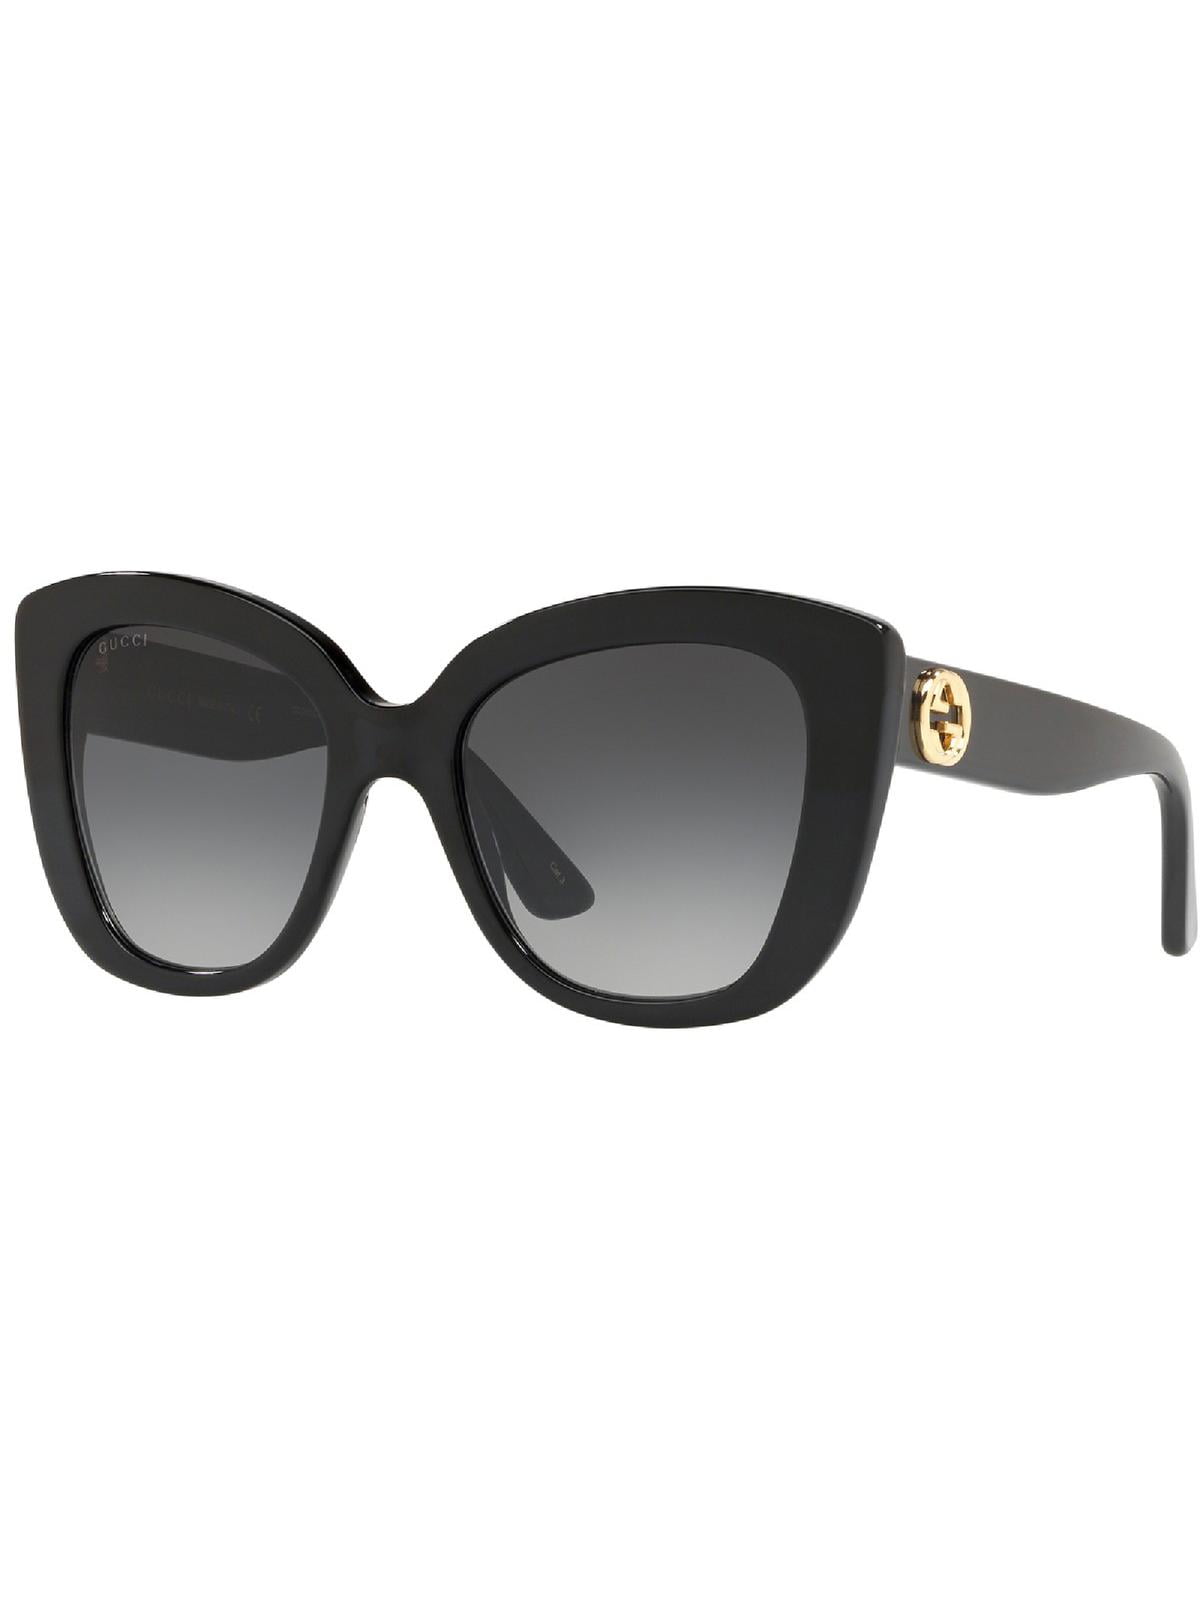 Cat-eye frame sunglasses in tortoiseshell acetate | GUCCI® ZA